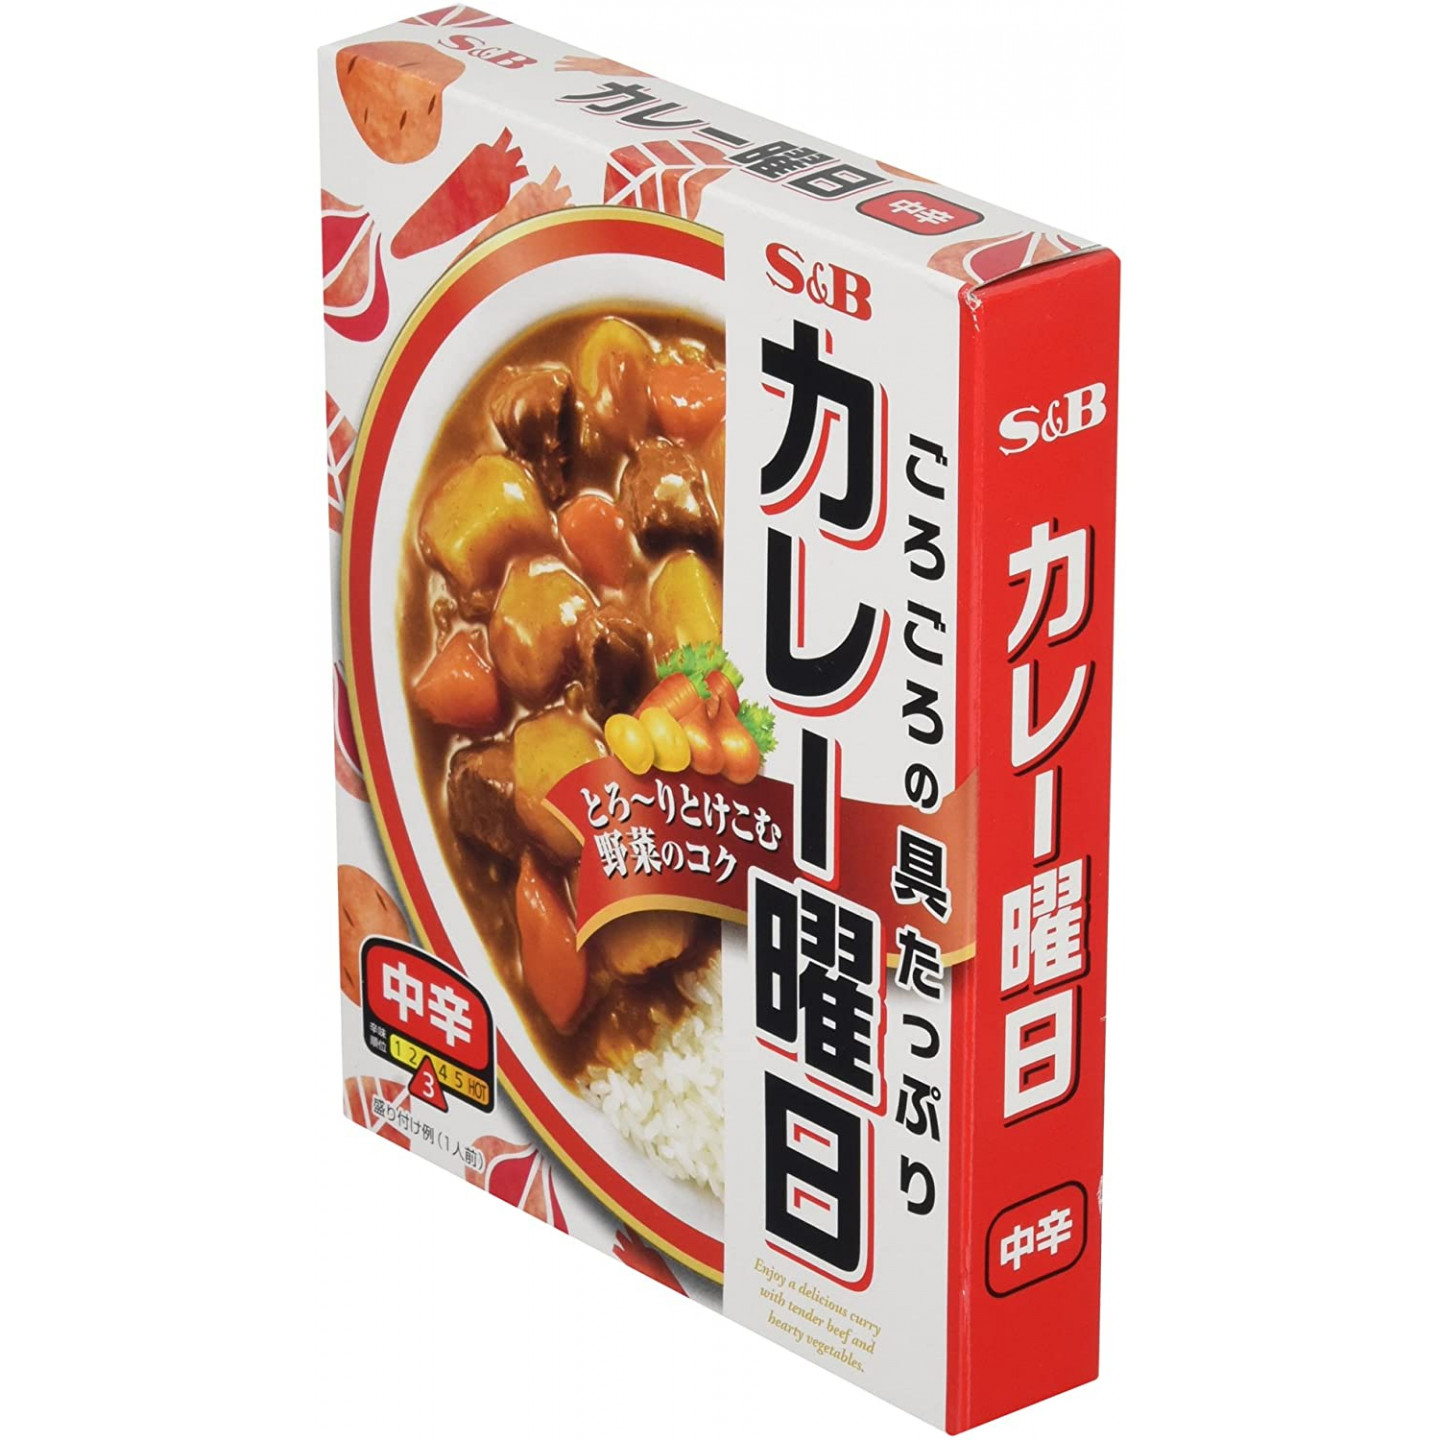 Golden curry medium hot - S&B - 230 g